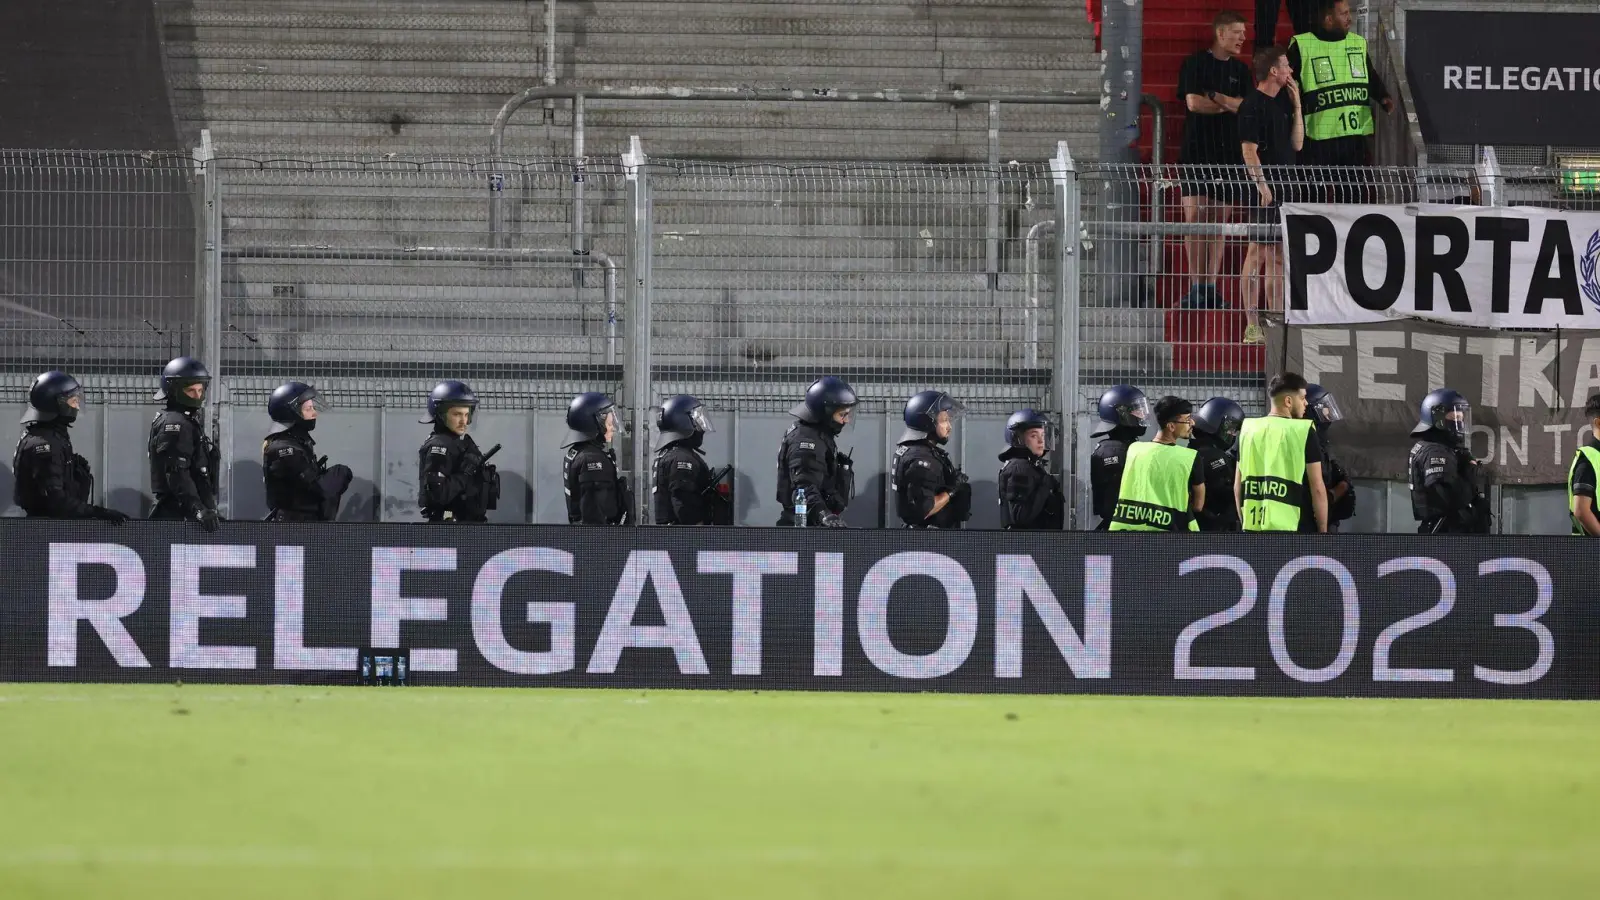 Der DFB untersucht nach den Ausschreitungen im Relegationshinspiel zwischen Wehen Wiesbaden und Bielefeld die Vorfälle. (Foto: Jörg Halisch/dpa)